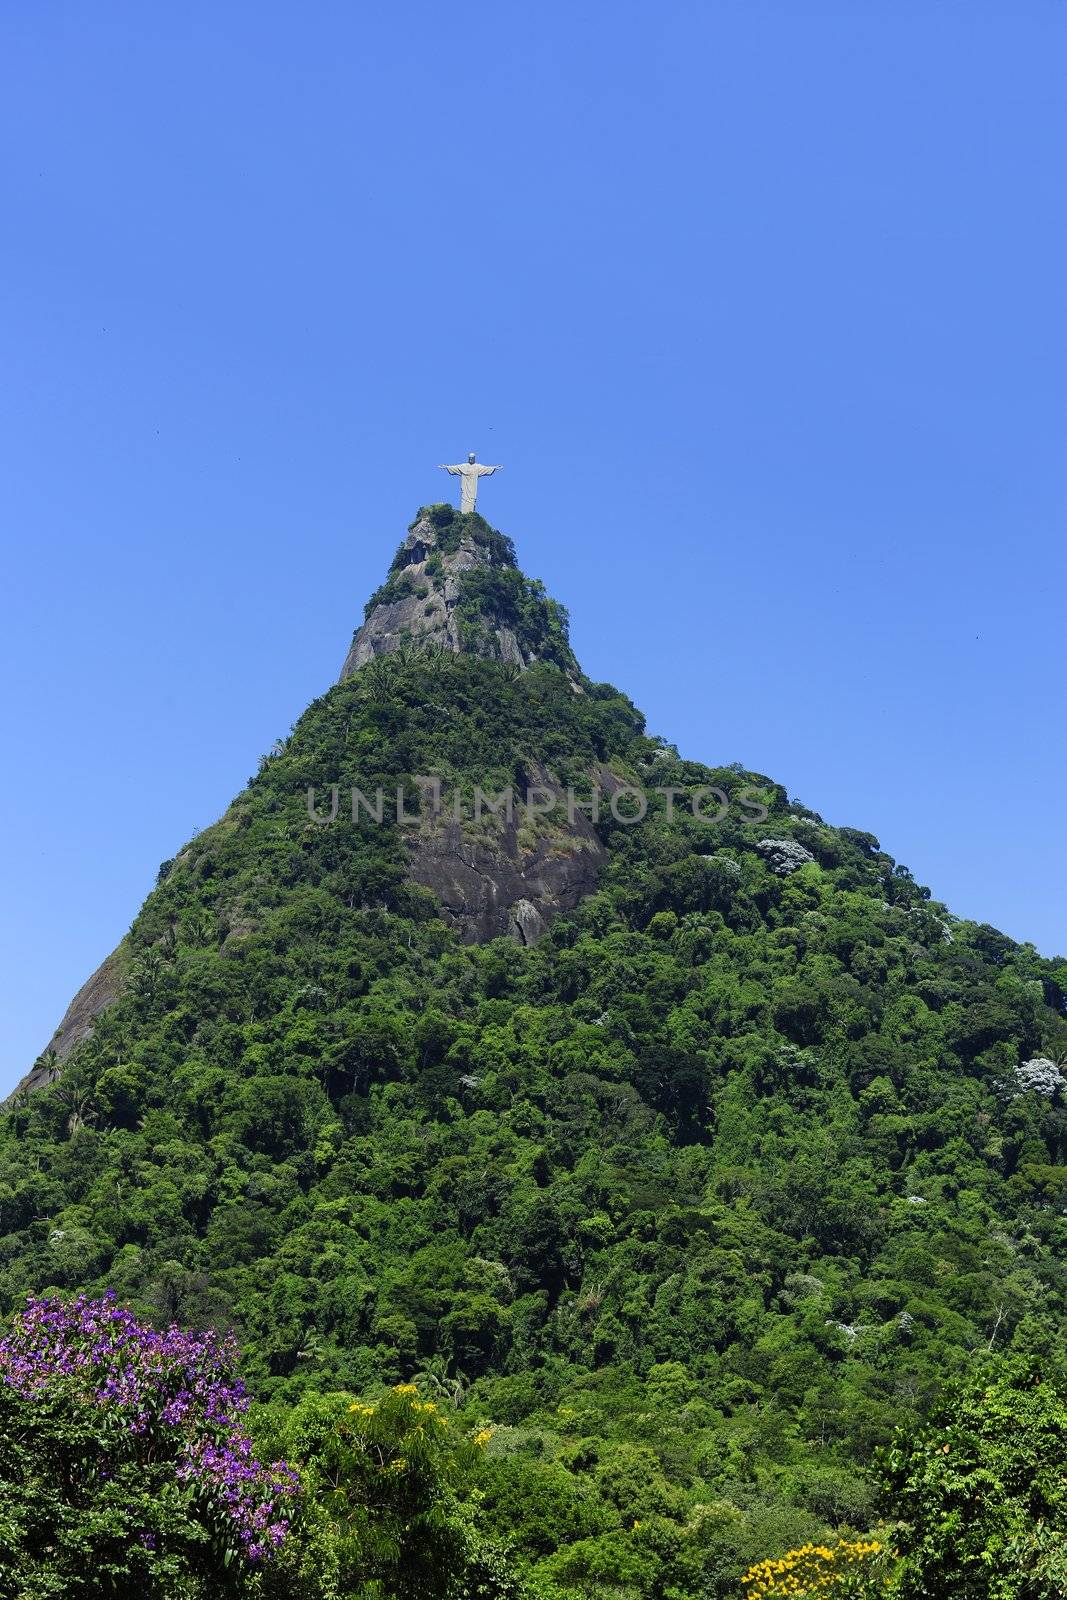 Corcovado Mountain with Christ Redeemer Statue, Rio de Janeiro, Brazil